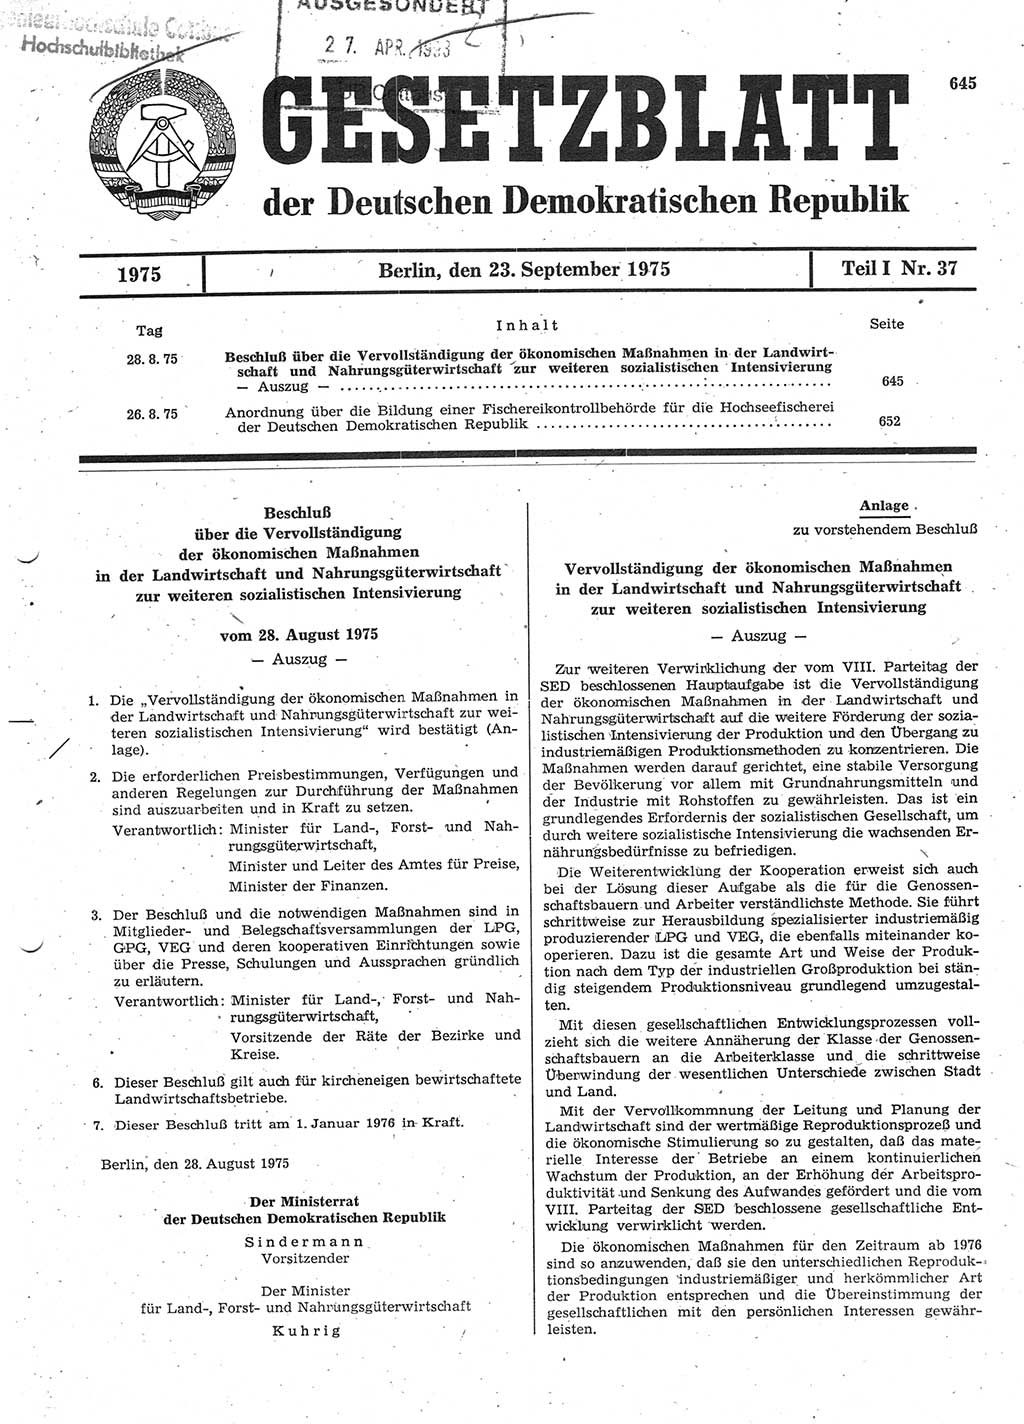 Gesetzblatt (GBl.) der Deutschen Demokratischen Republik (DDR) Teil Ⅰ 1975, Seite 645 (GBl. DDR Ⅰ 1975, S. 645)